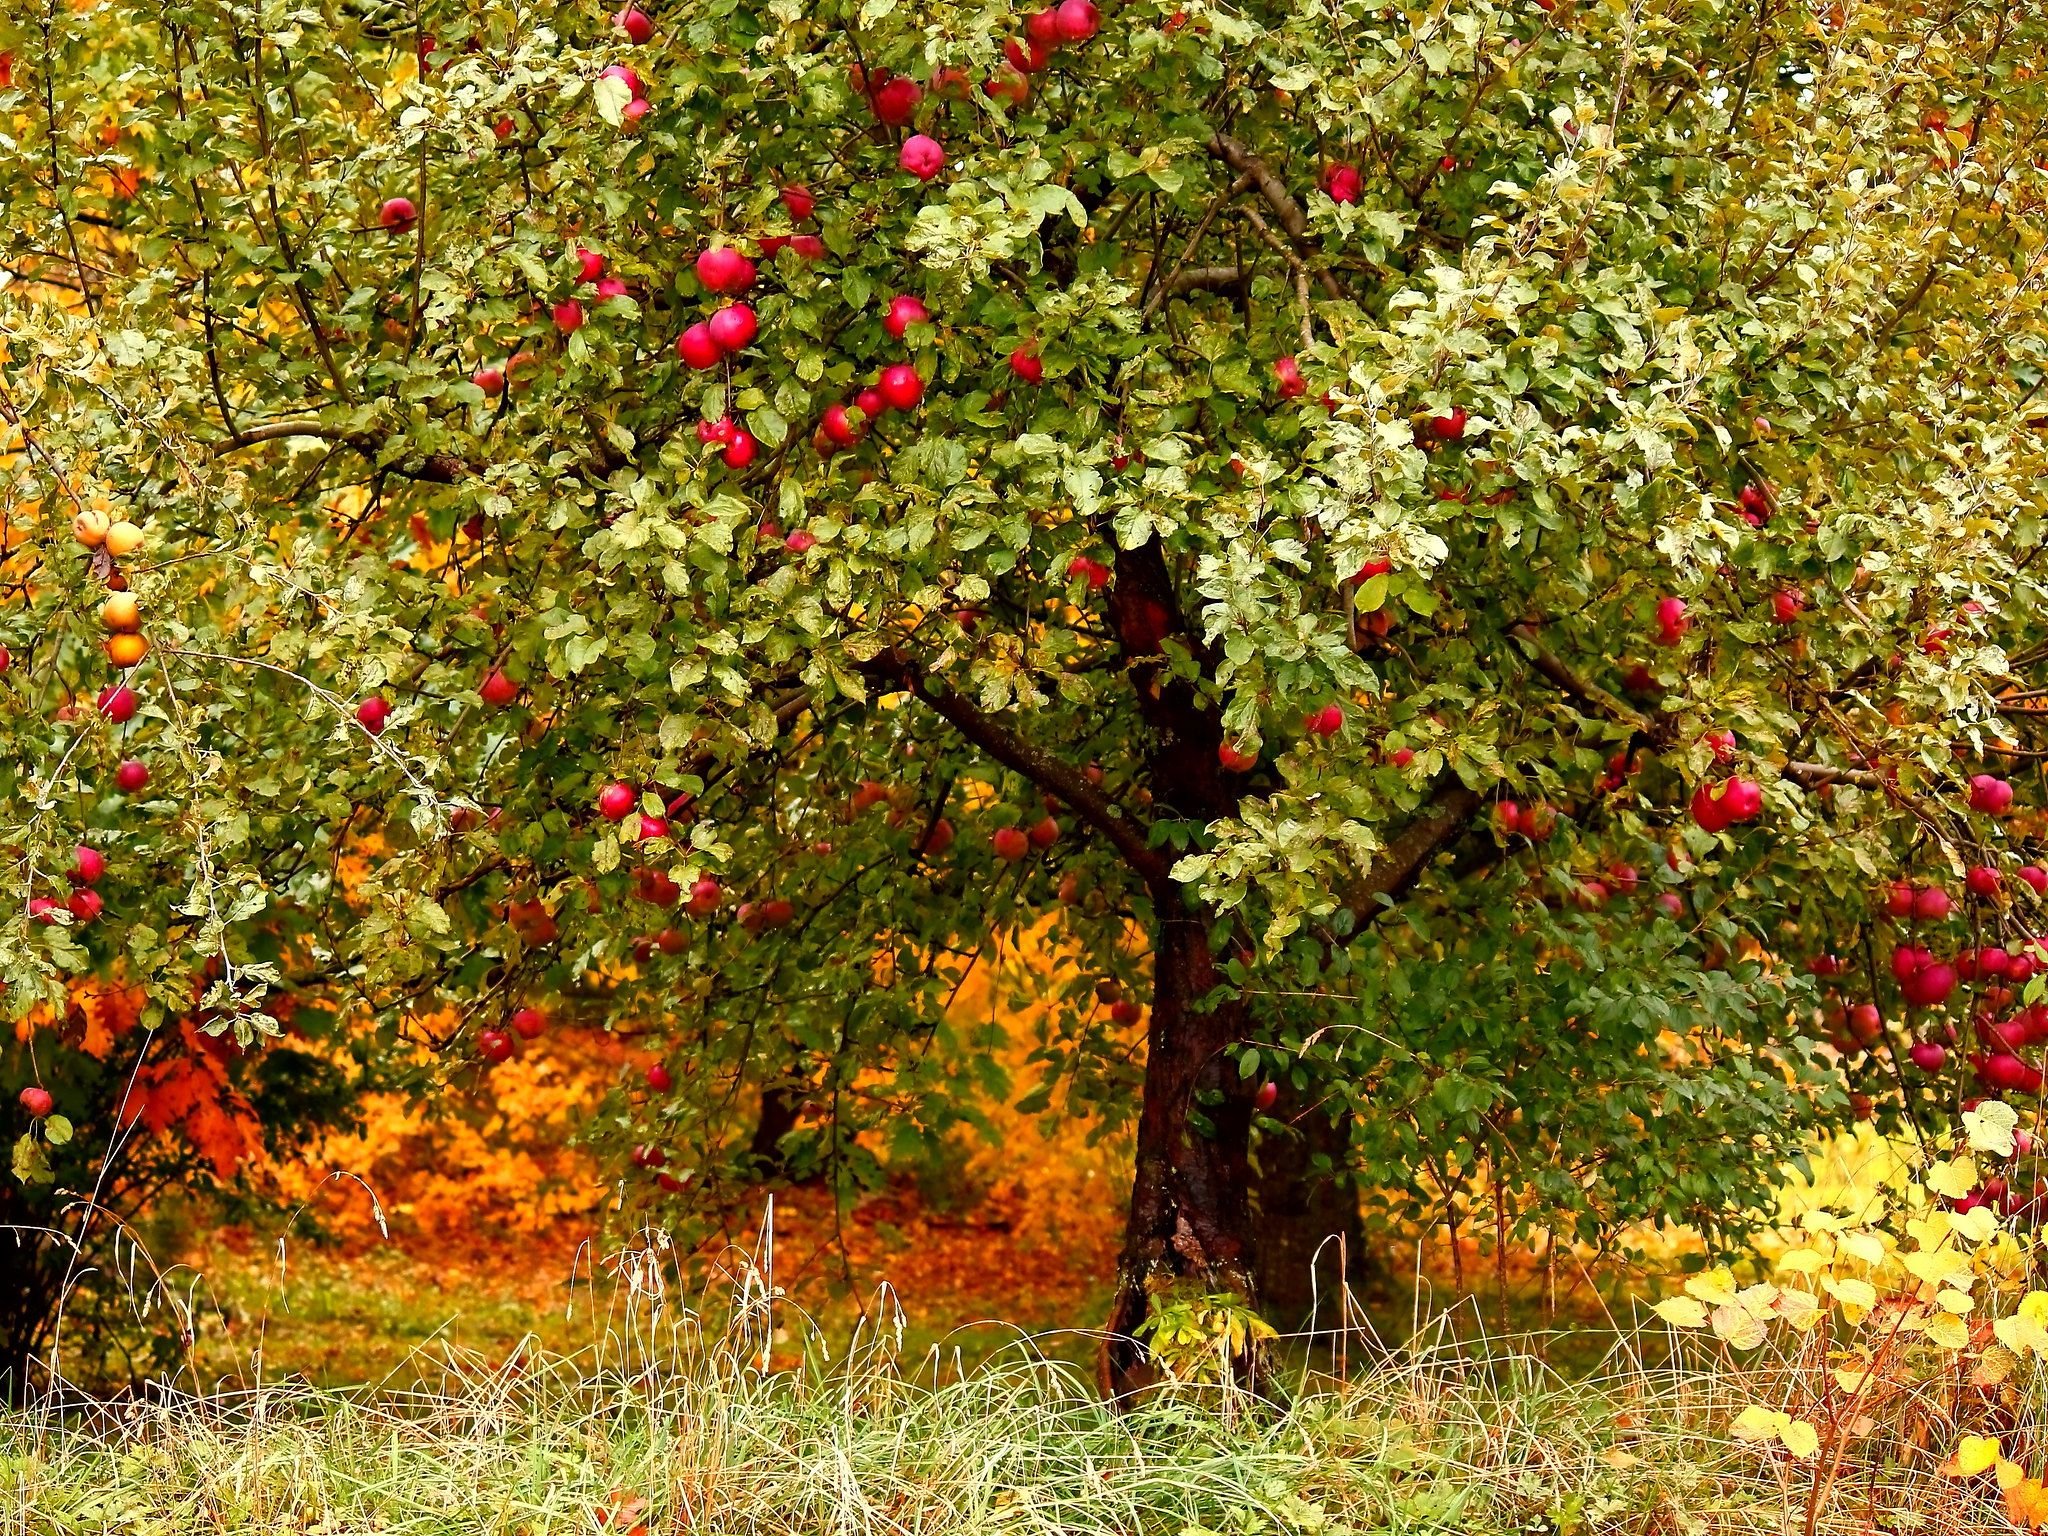 яблоки слетают с веток осень картинки